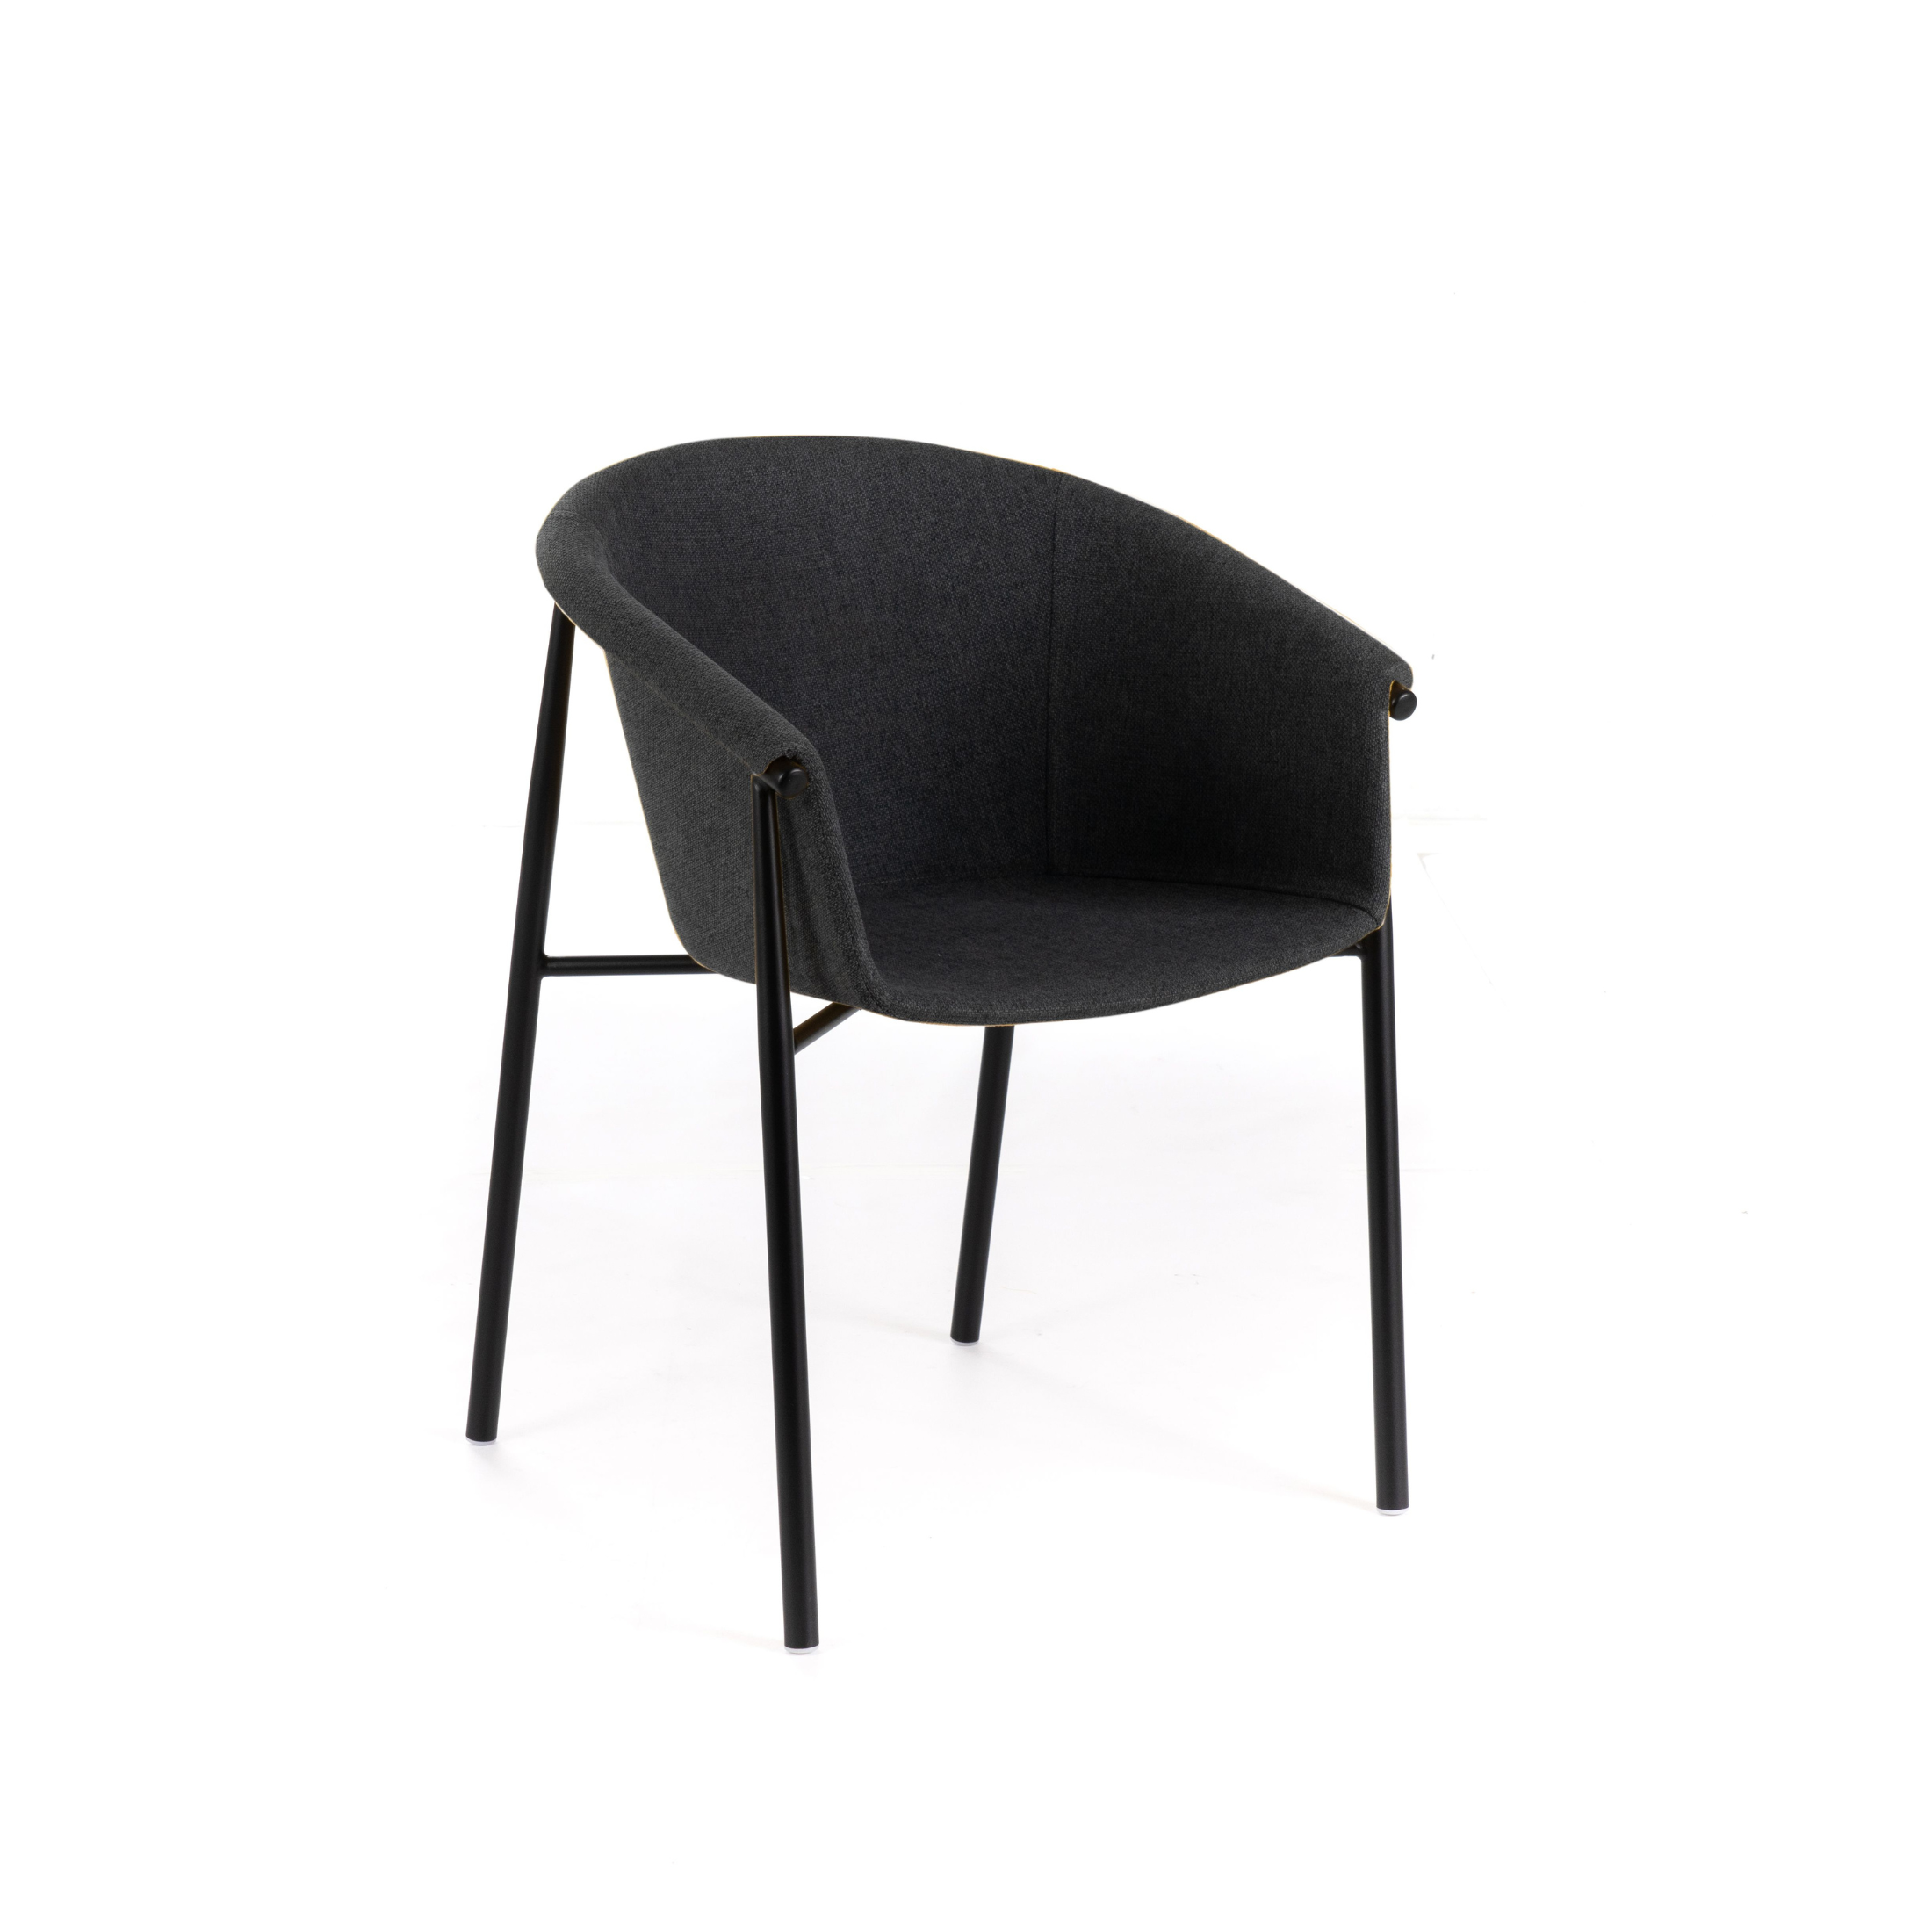 Silla de tela "Nari", elegante sillón moderno 56x58 79h cm